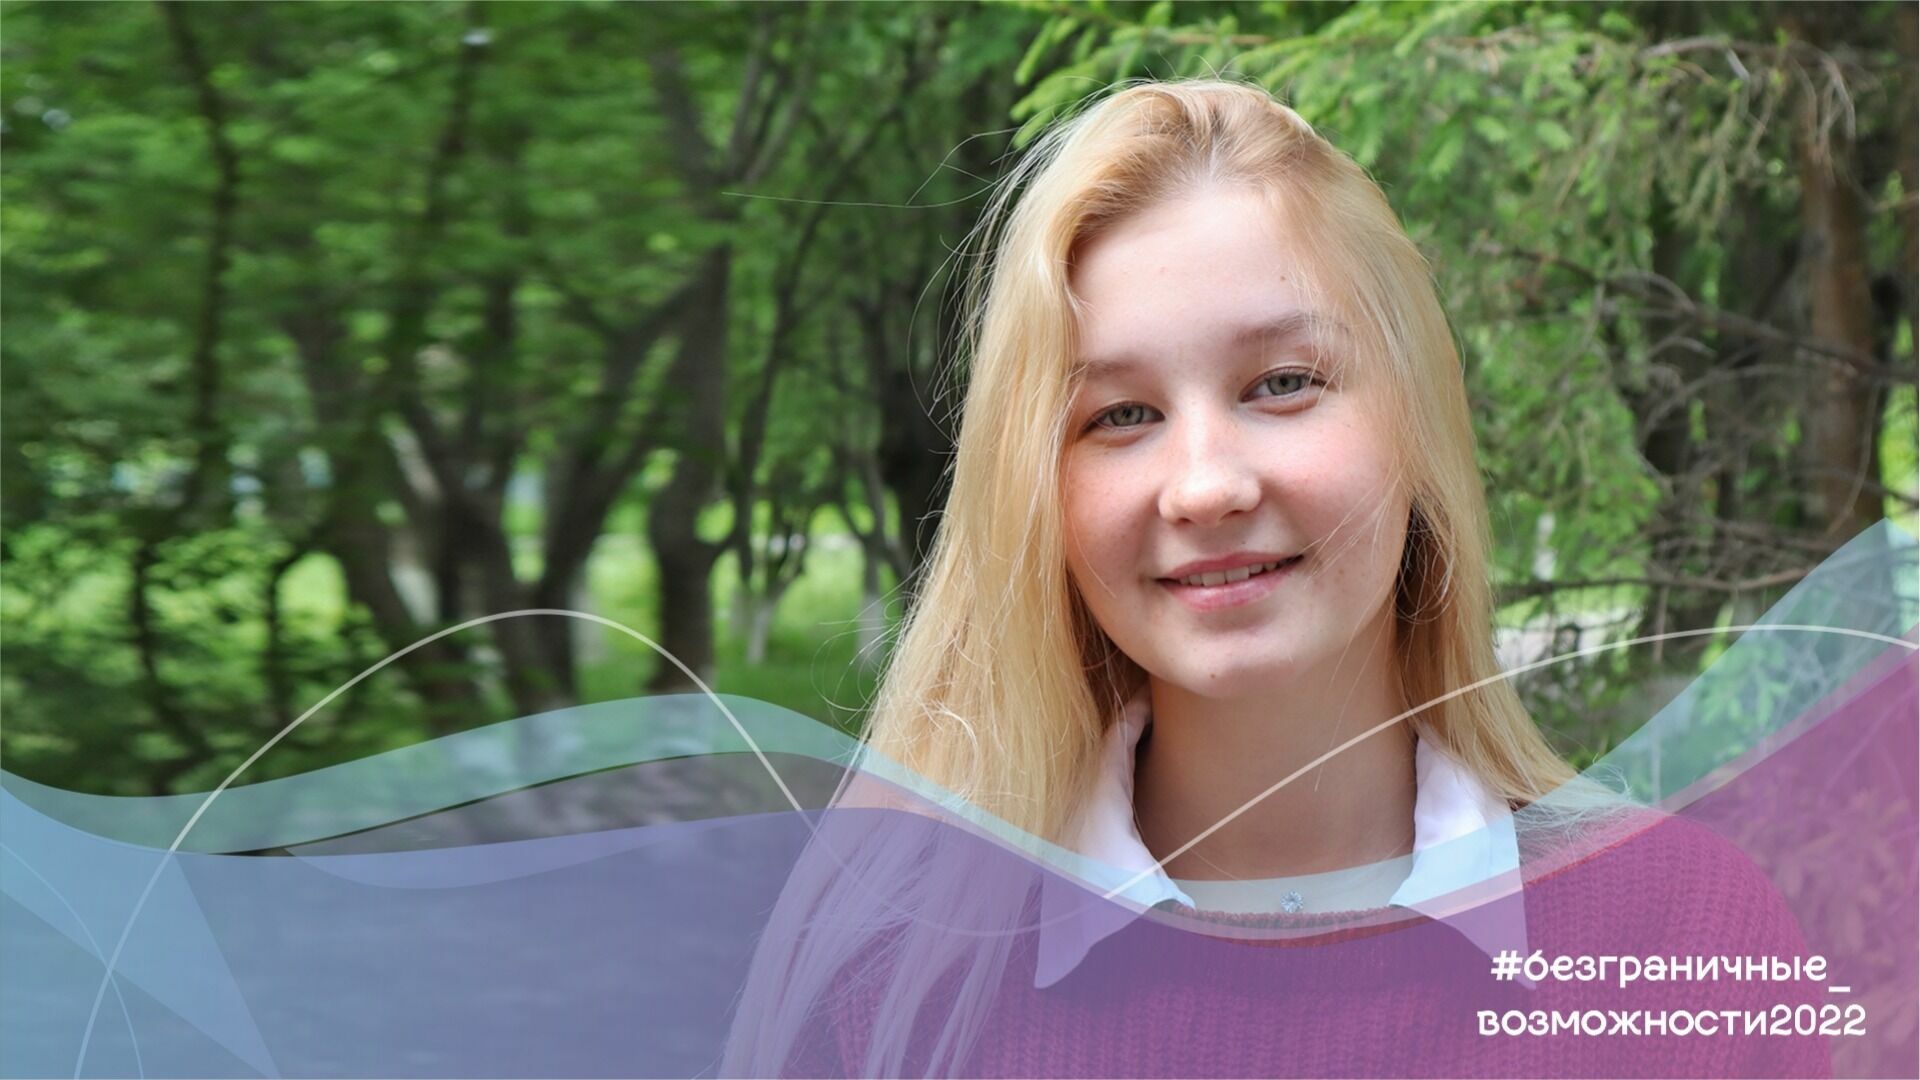 Юная певица из Омска учит иностранные языки для глухих